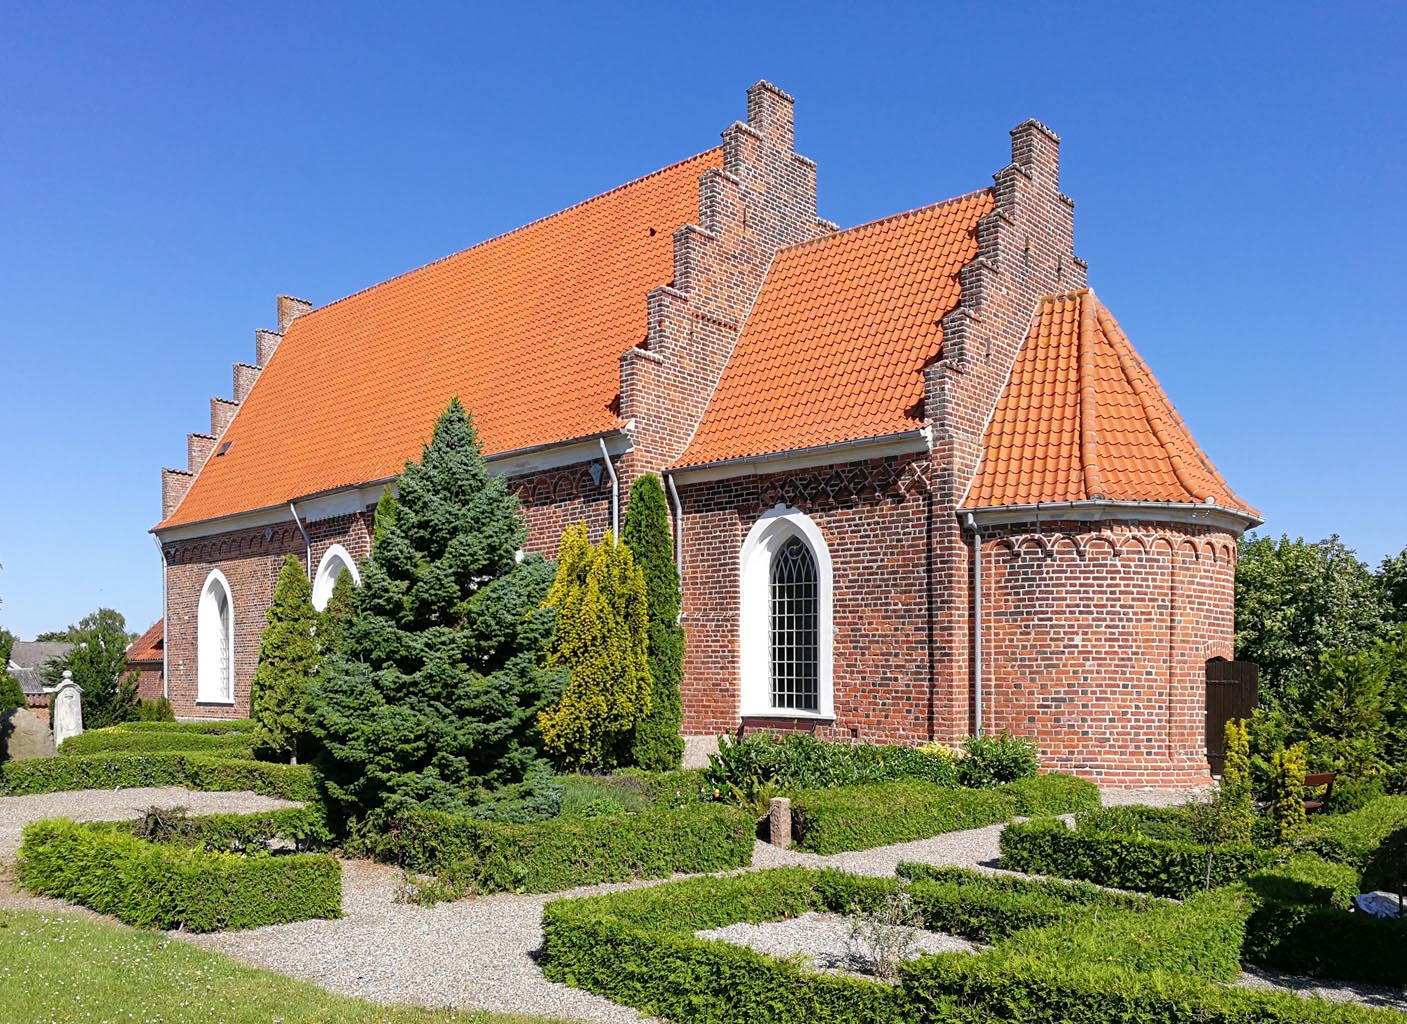 Tillitse Kirke, Lolland